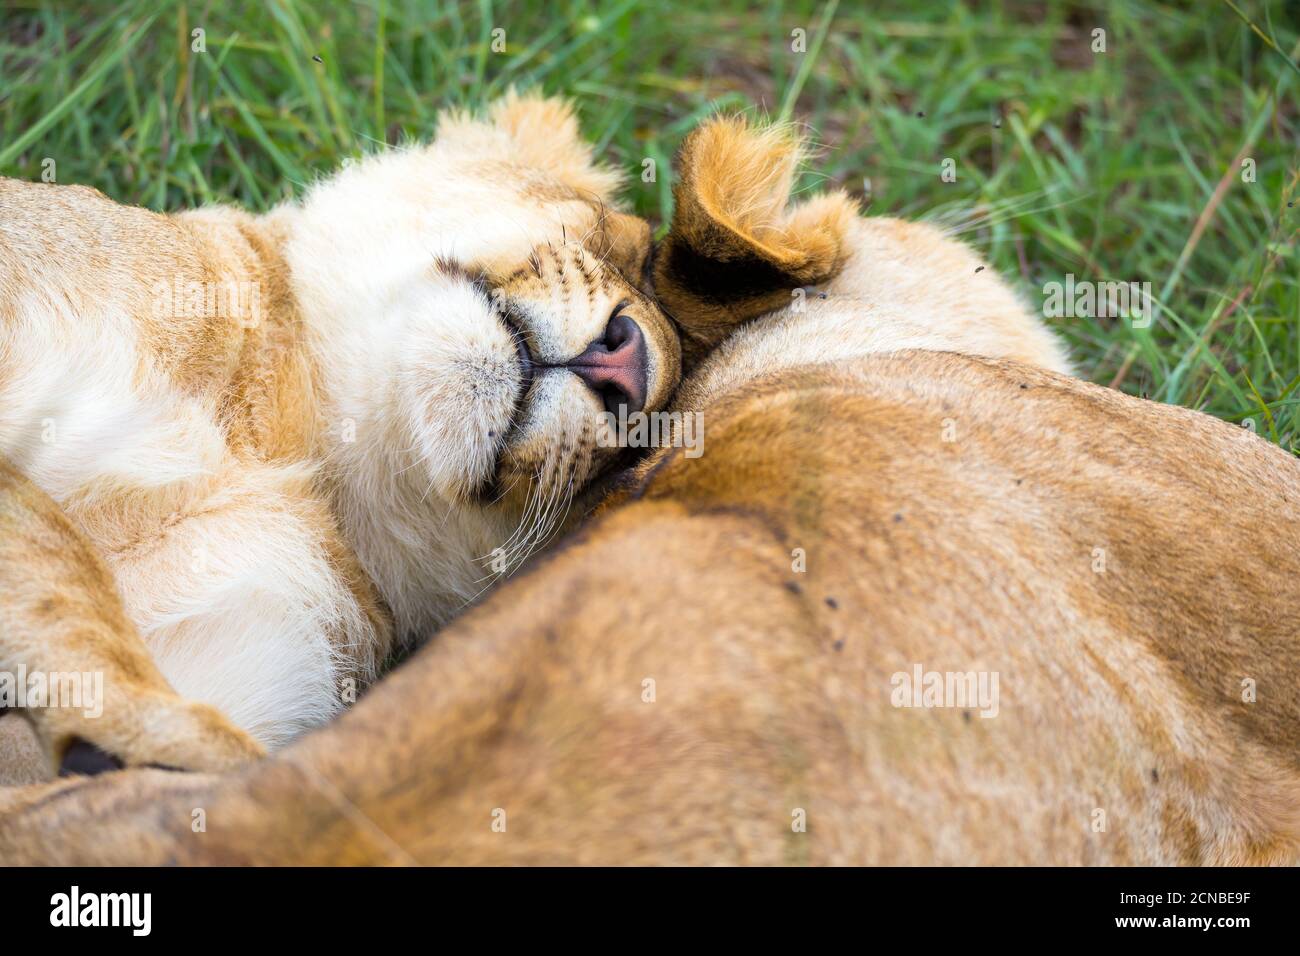 Dos leones jóvenes se acurruca y juegan unos con otros Foto de stock